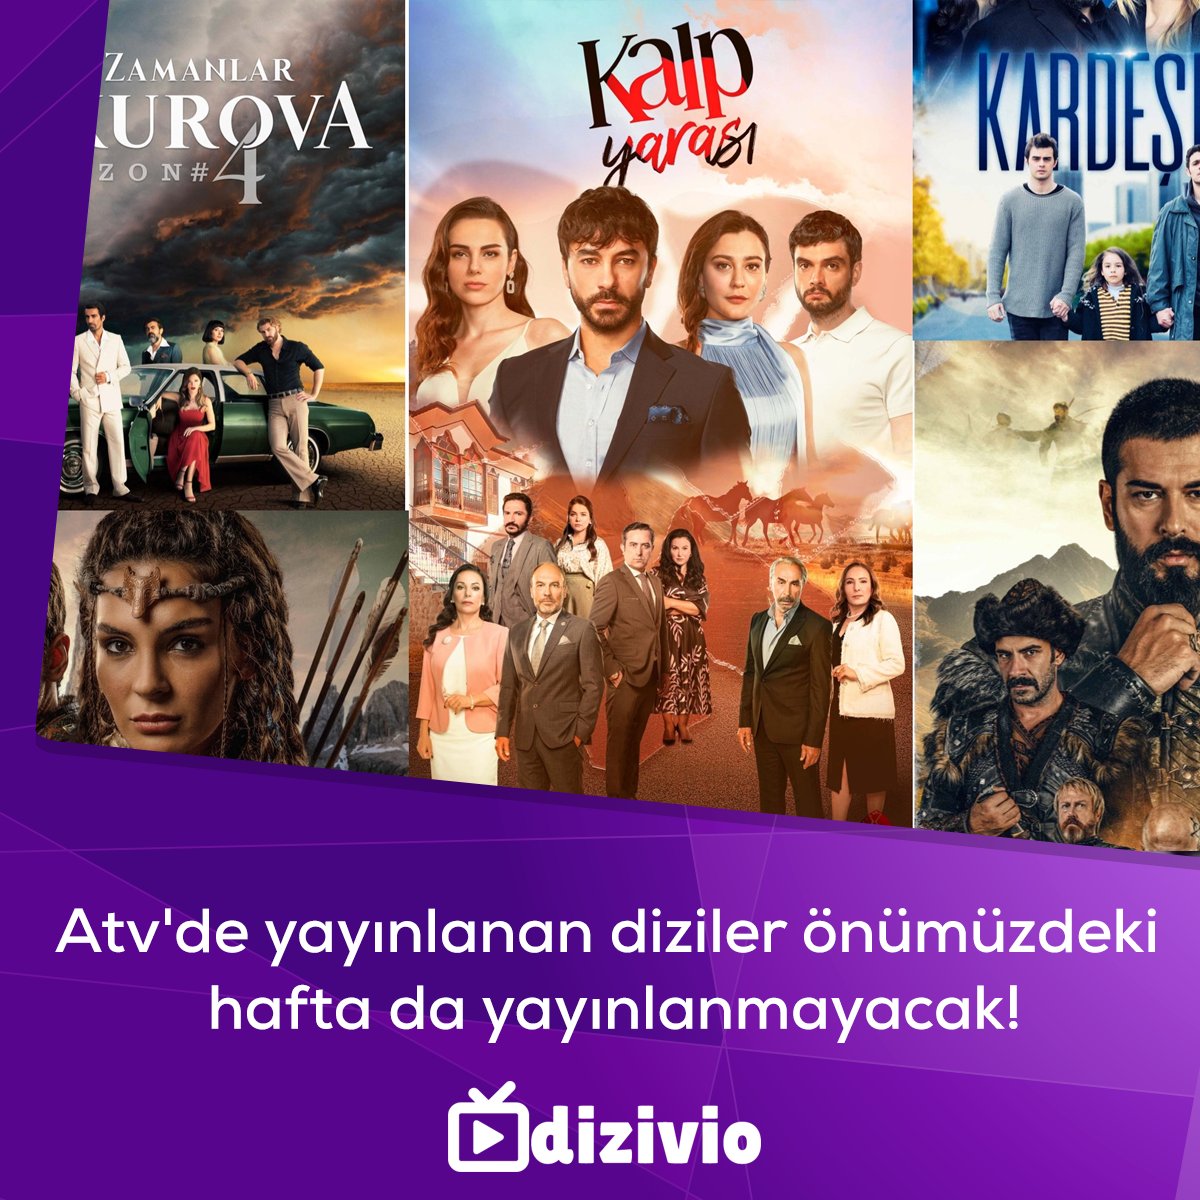 Atv'de yayınlanan diziler önümüzdeki hafta da yayınlanmayacak!

#BirZamanlarÇukurova #Destan #KalpYarası #Kardeşlerim #KuruluşOsman #ATV #TürkDizileri